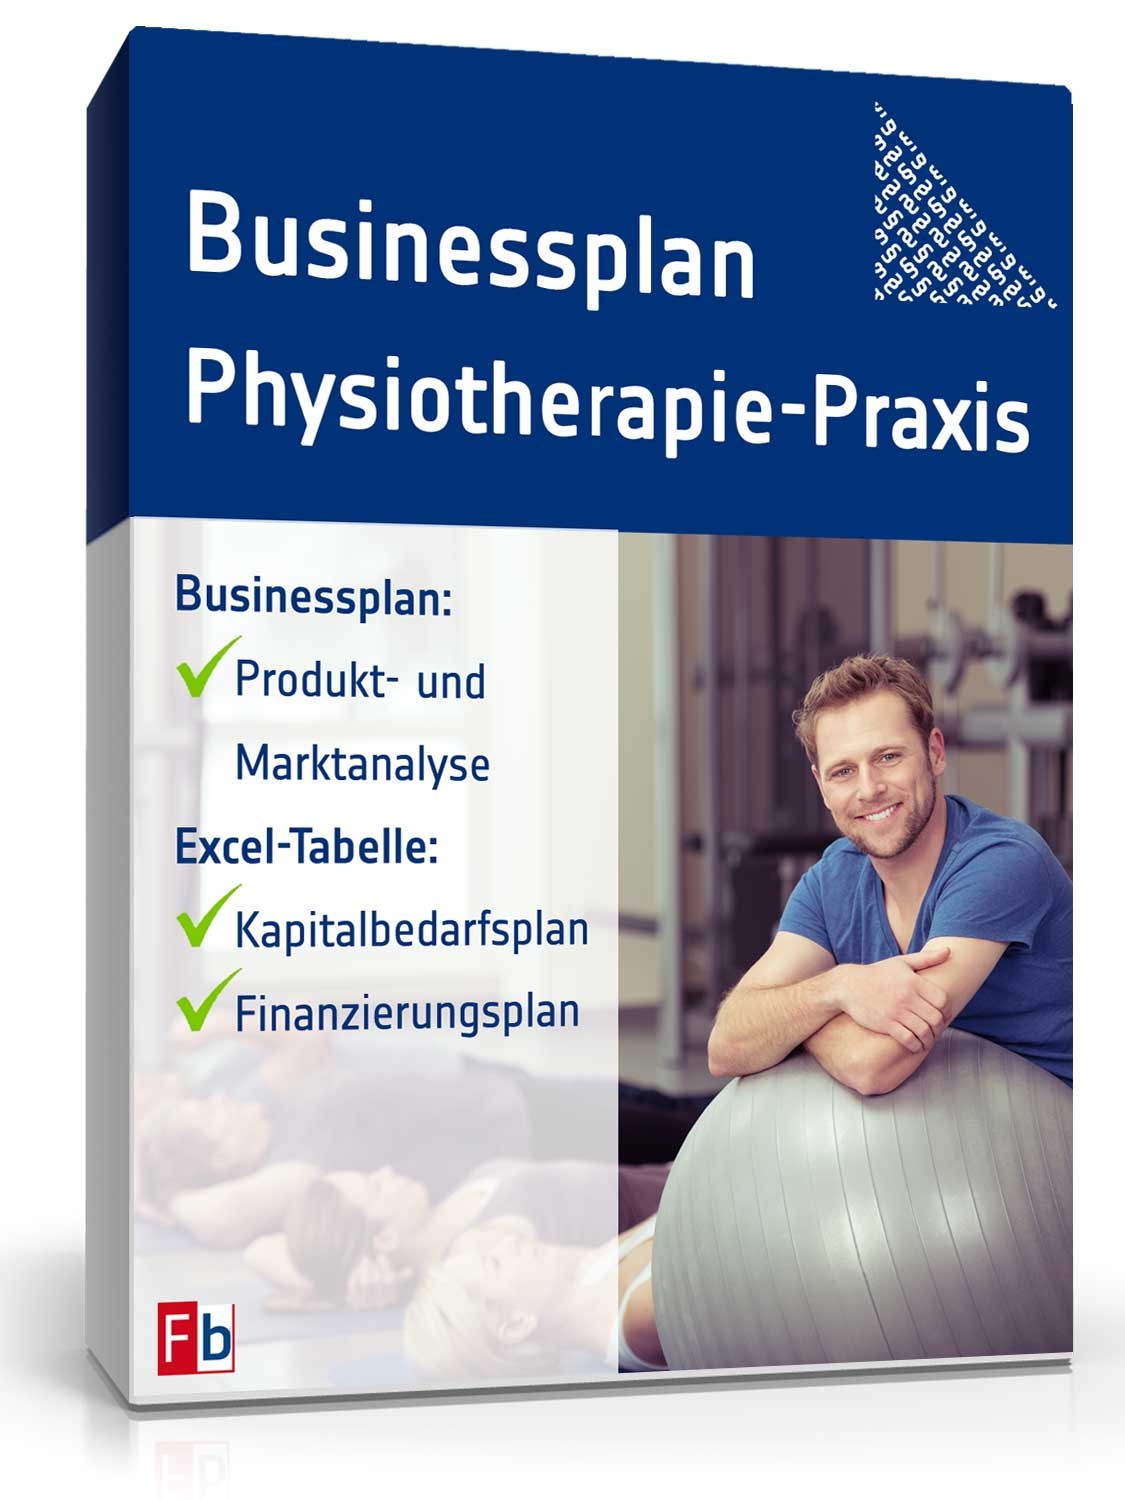 Hauptbild des Produkts: Businessplan Physiotherapie